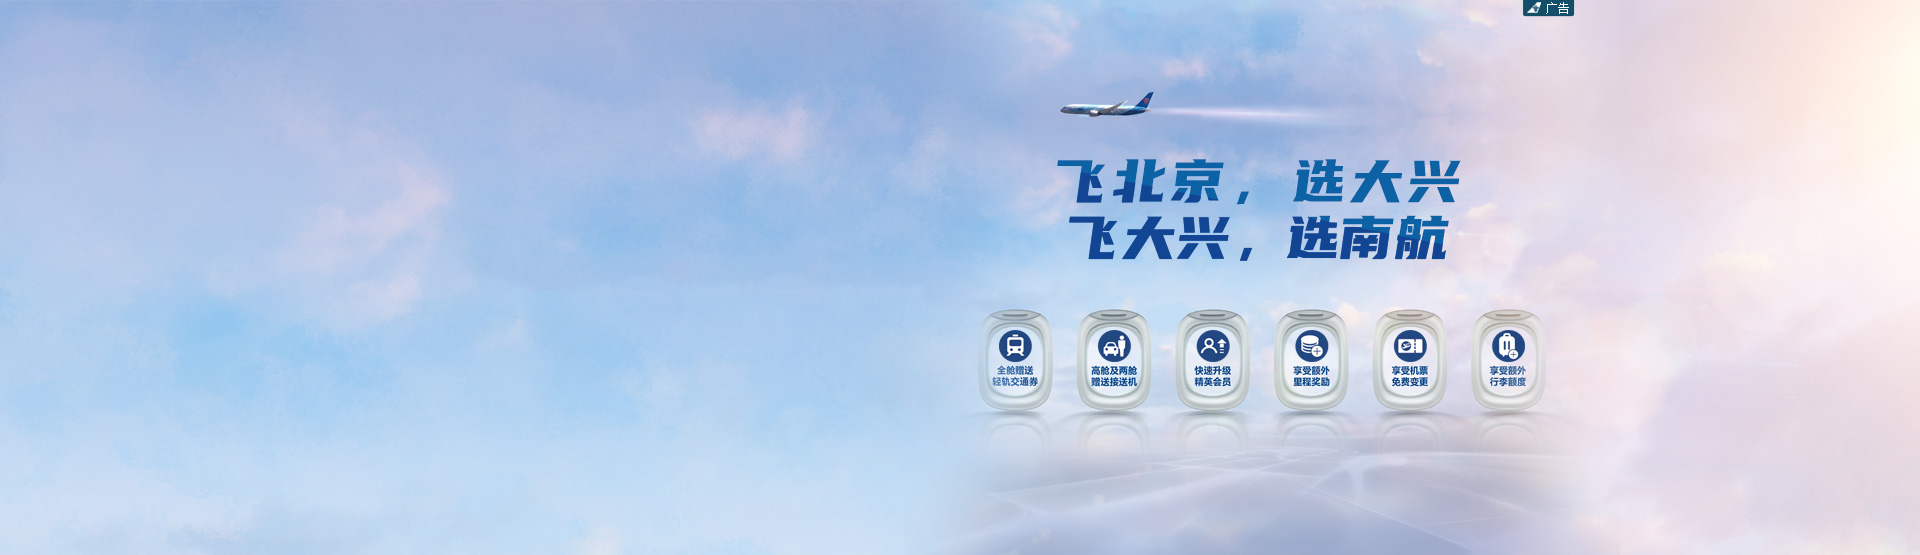 中国南方航空官网 机票查询 机票预定 航班查询